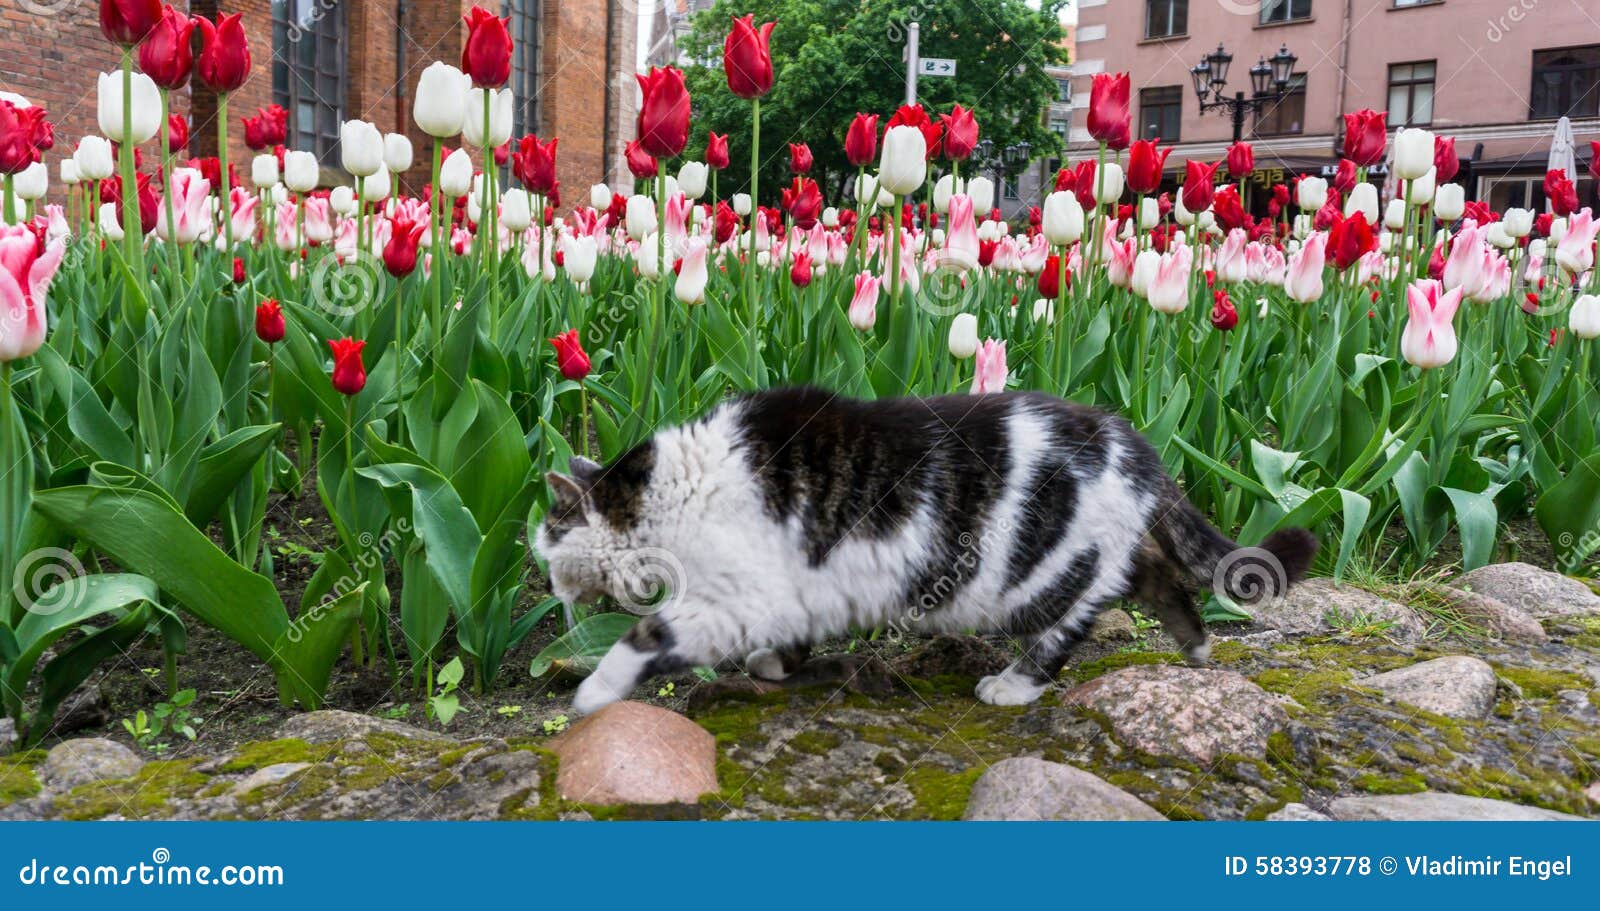 Тюльпаны для кошек ядовиты или нет. Котик с тюльпанами. Нидерланды коты с тюльпанами. Кот с цветами тюльпаны.